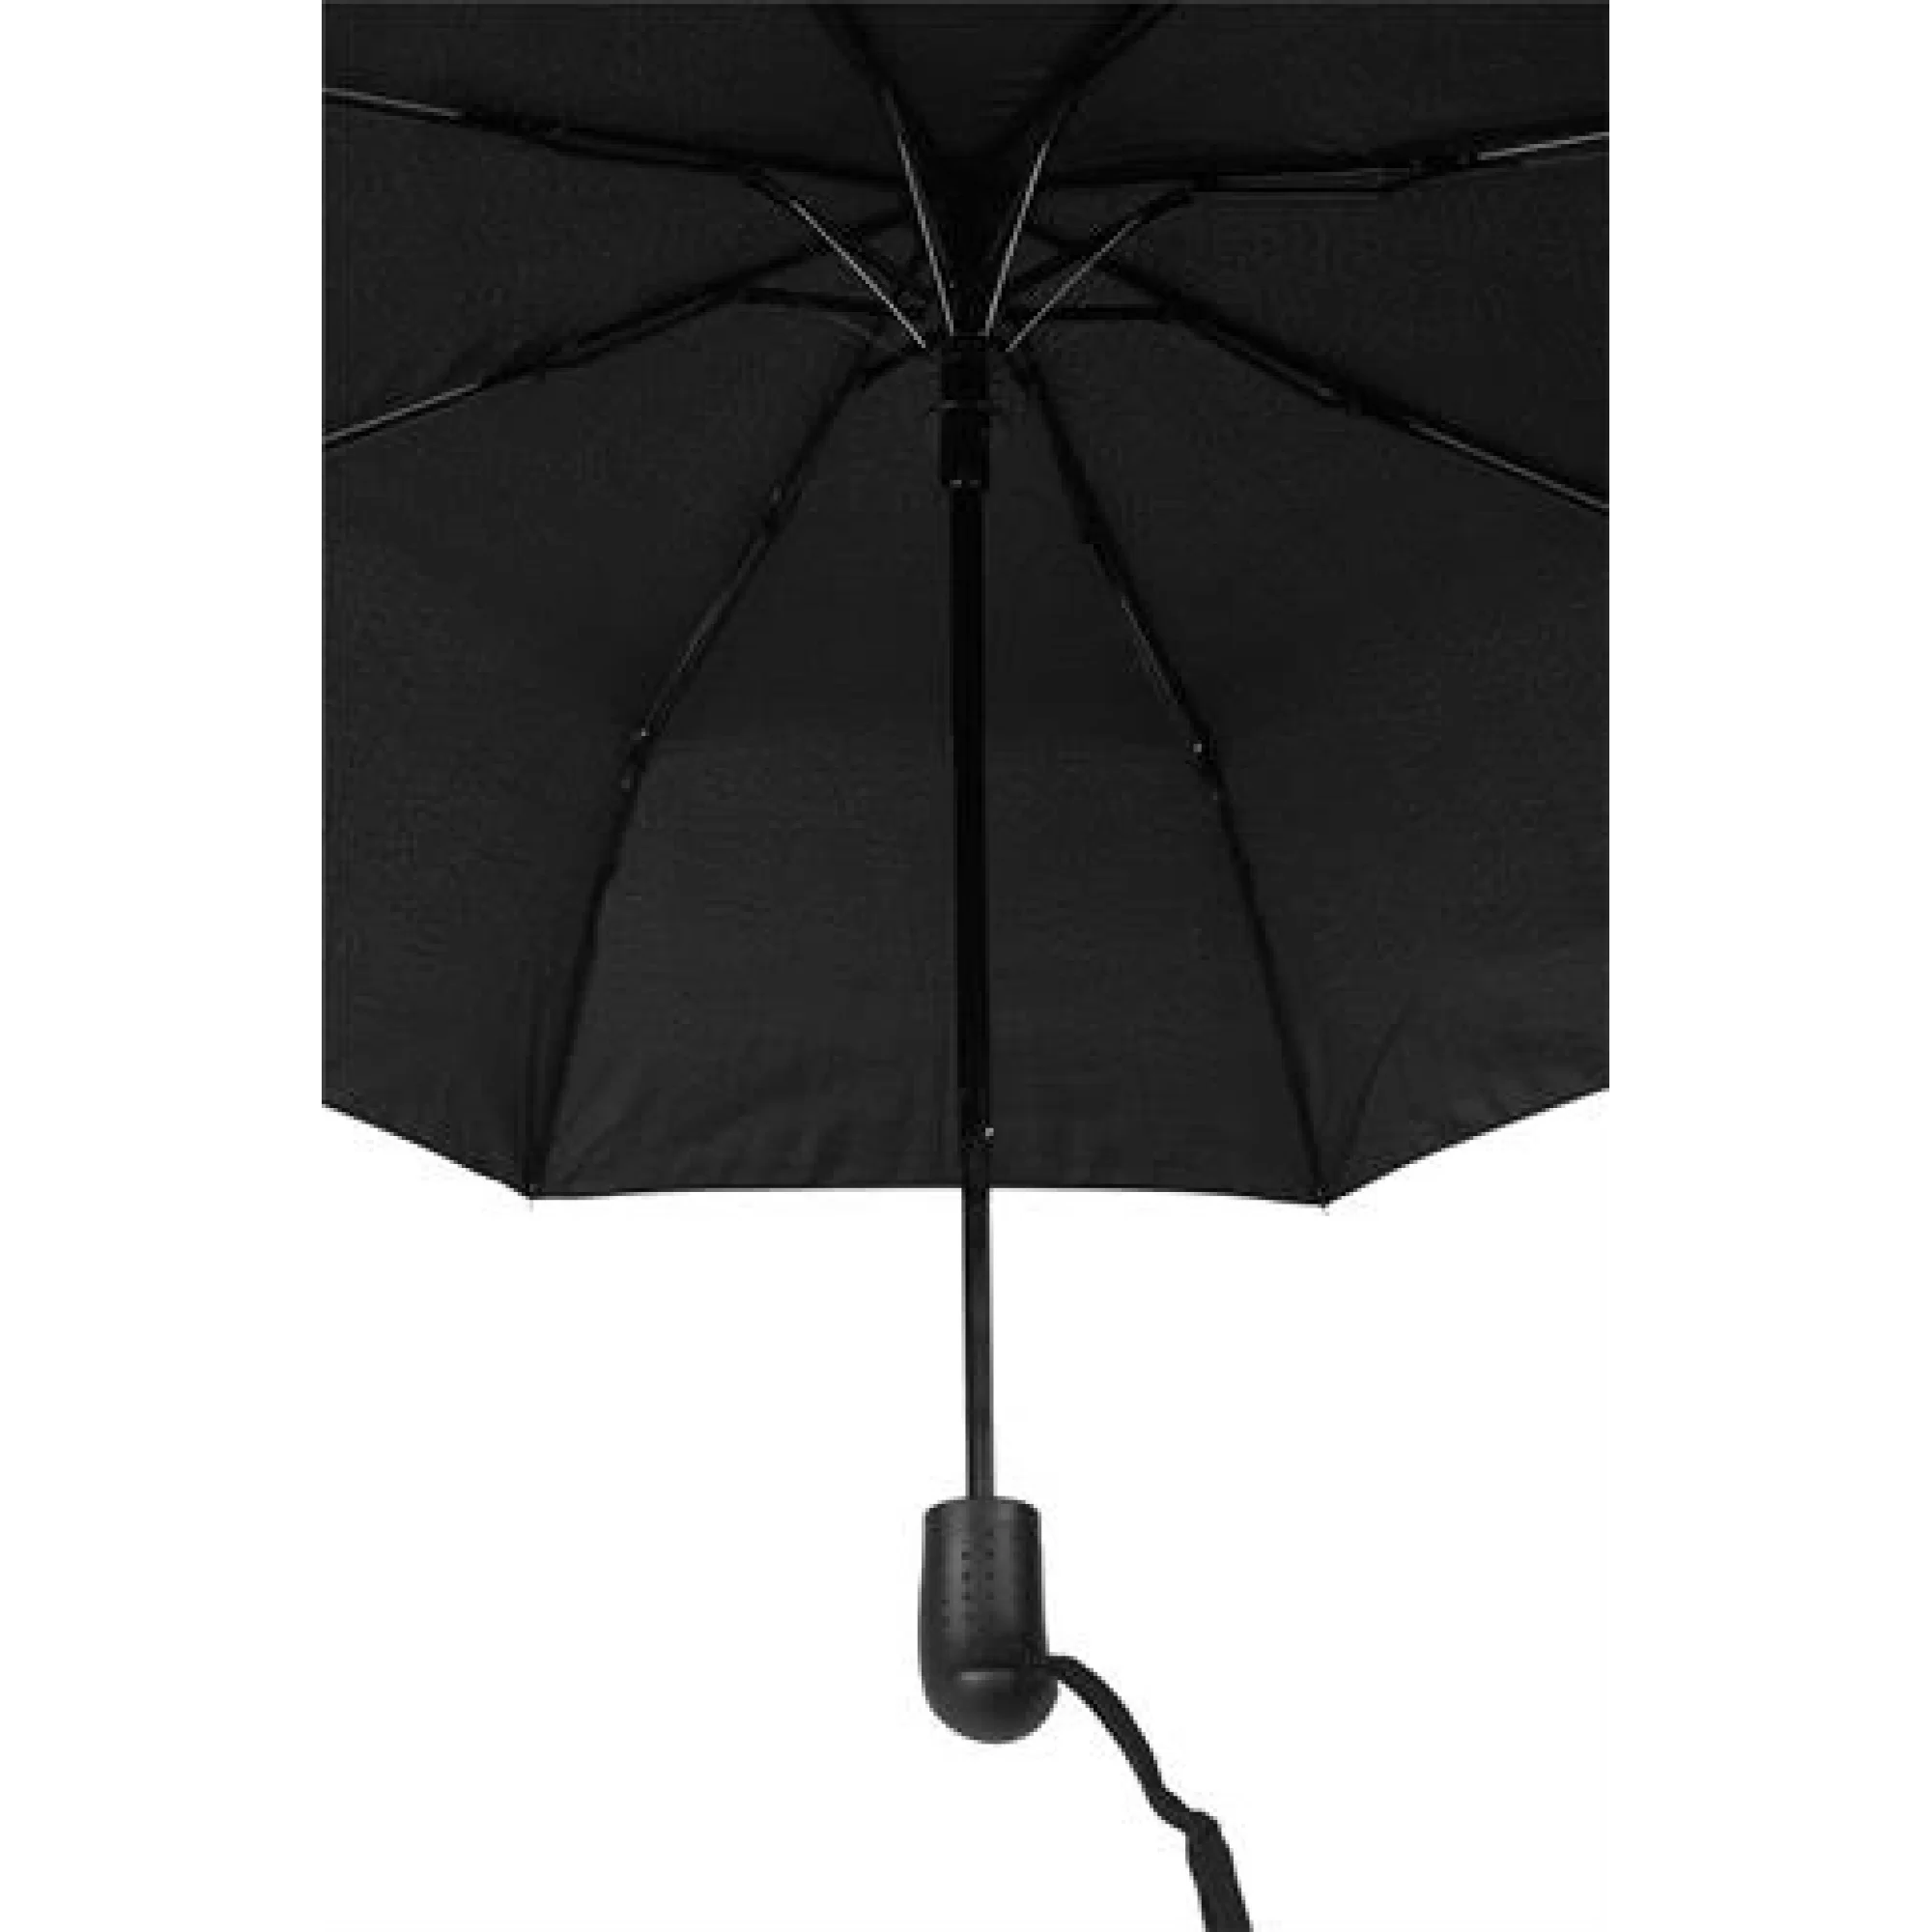 Marpaş Marlux MAR 112-M Şemsiye Desenli 8 Telli